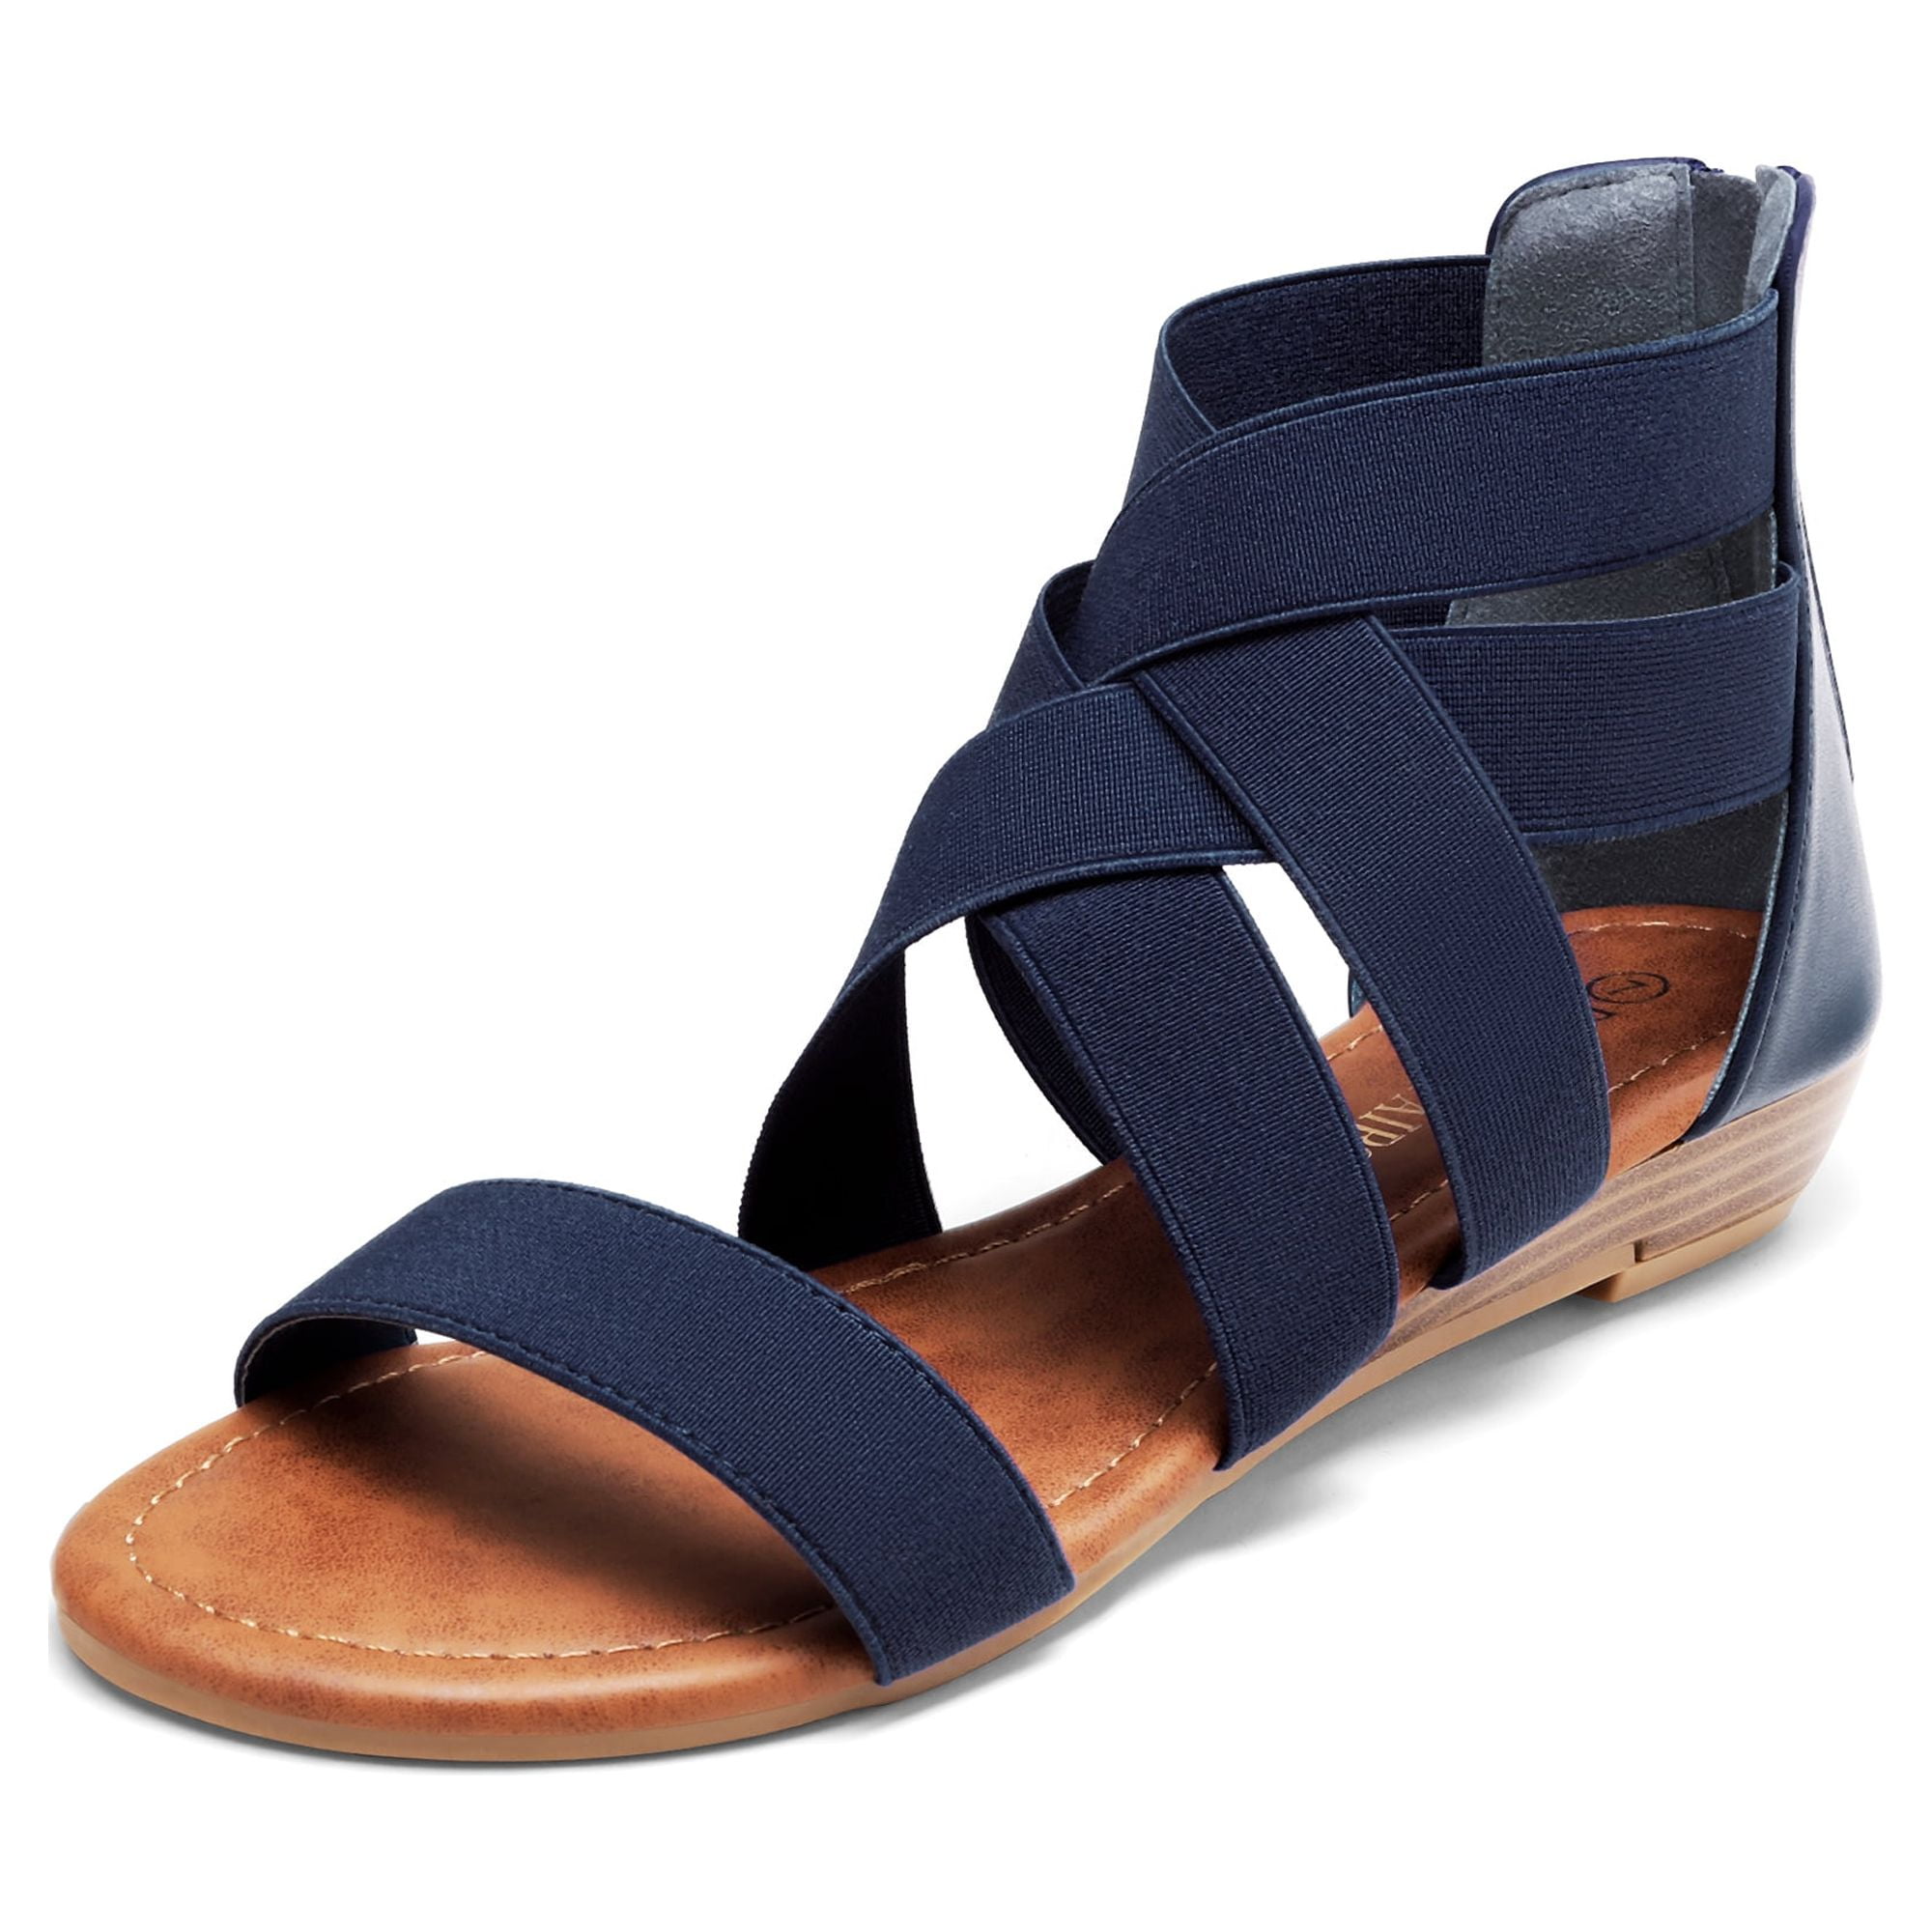 Women's Flat Sandals Open Toe Elastica Flexible Summer Gladiator Shoes Size  5-11 | eBay